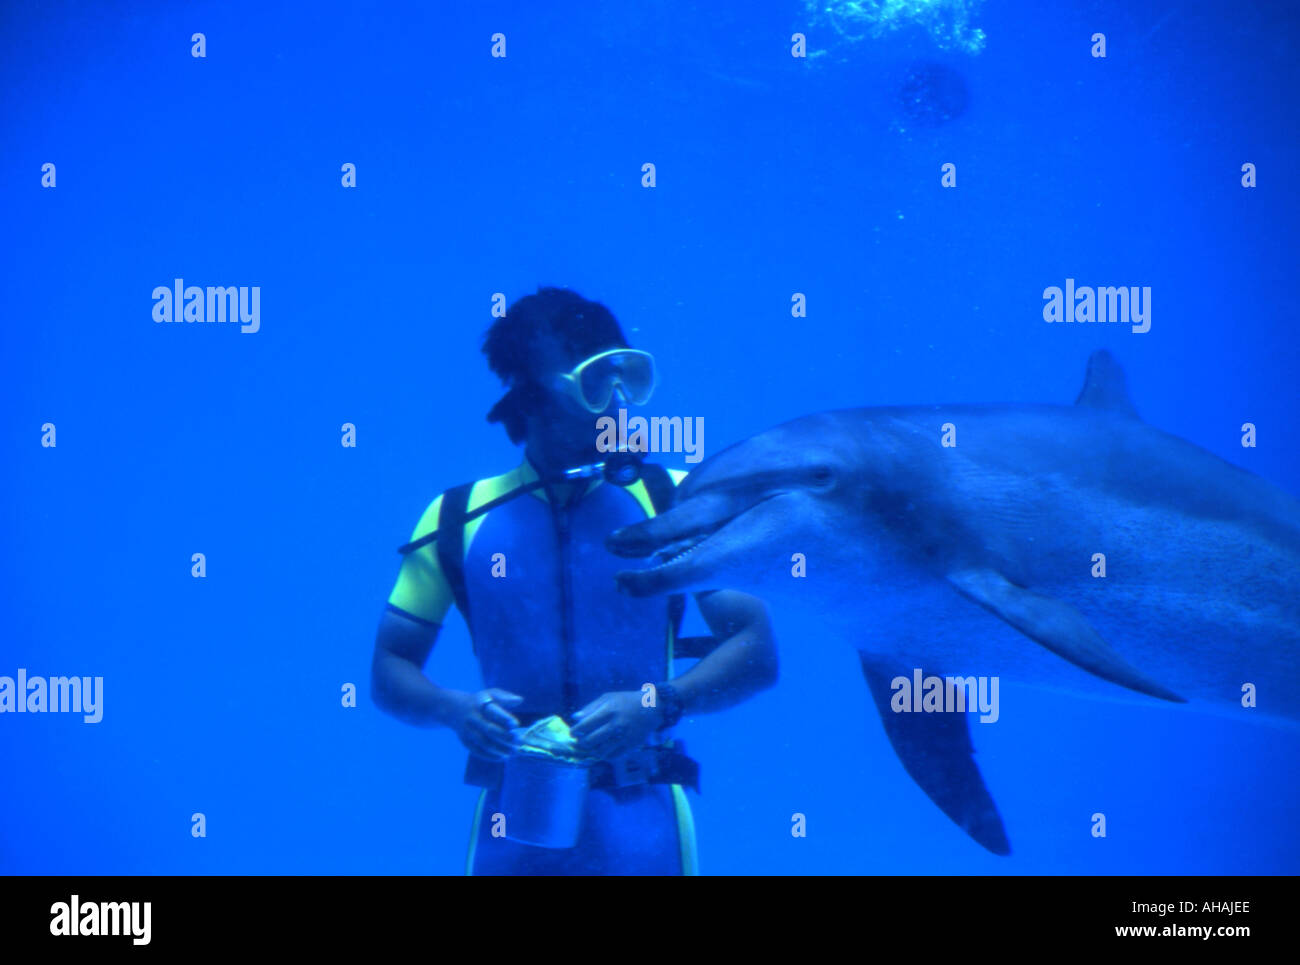 Parc Expo Okinawa Japon dauphins effectuer pour les foules Banque D'Images